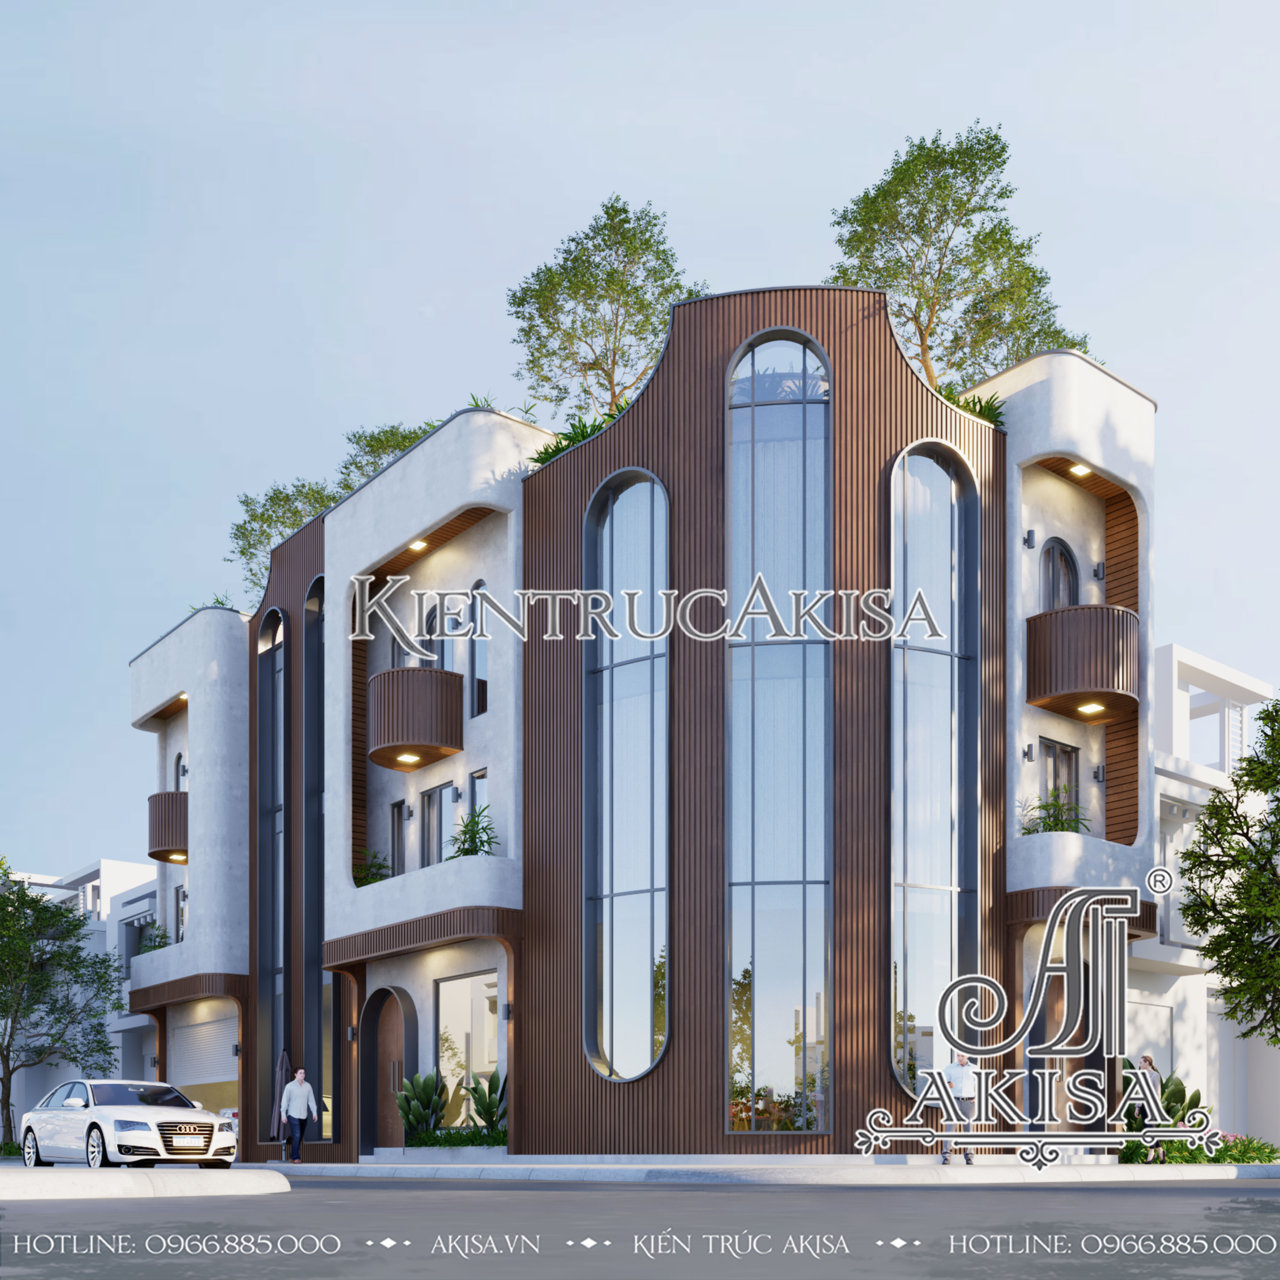 Khám phá và chiêm ngưỡng mẫu thiết kế nhà lô góc 3 tầng hiện đại đẹp ấn tượng tại Cà Mau